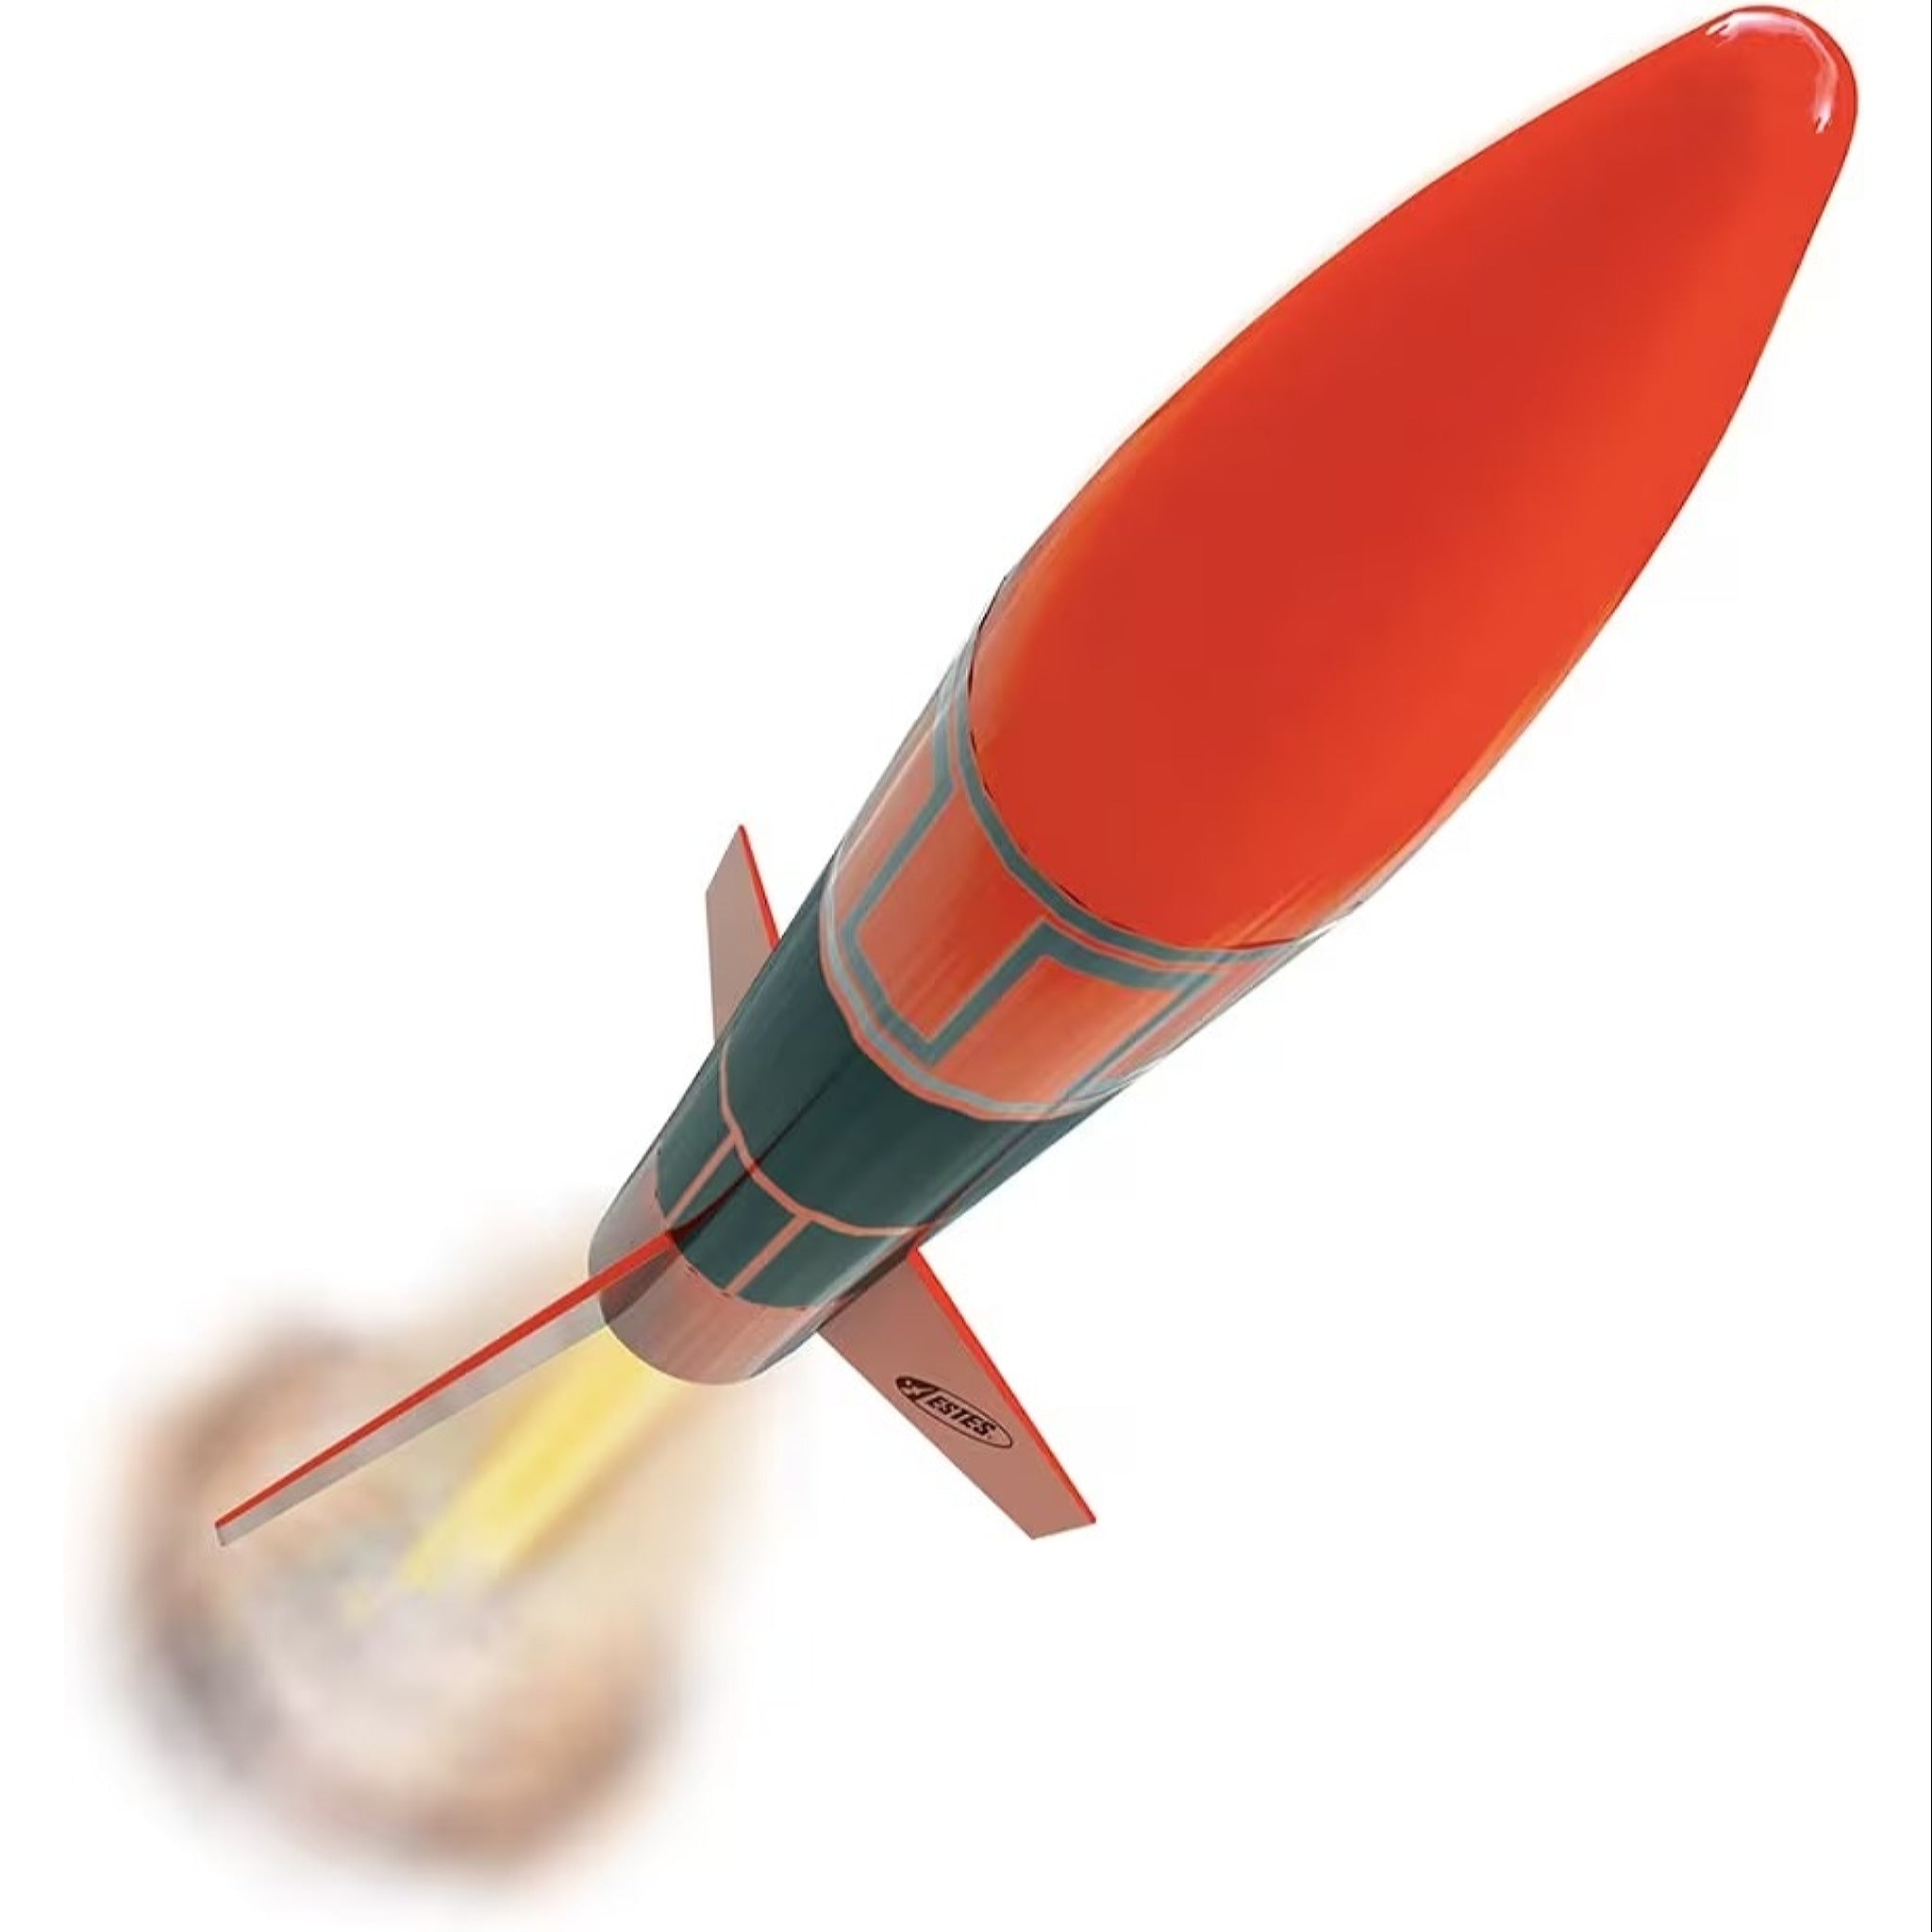 Estes 1427 Alpha III Rocket Launch Set E2X